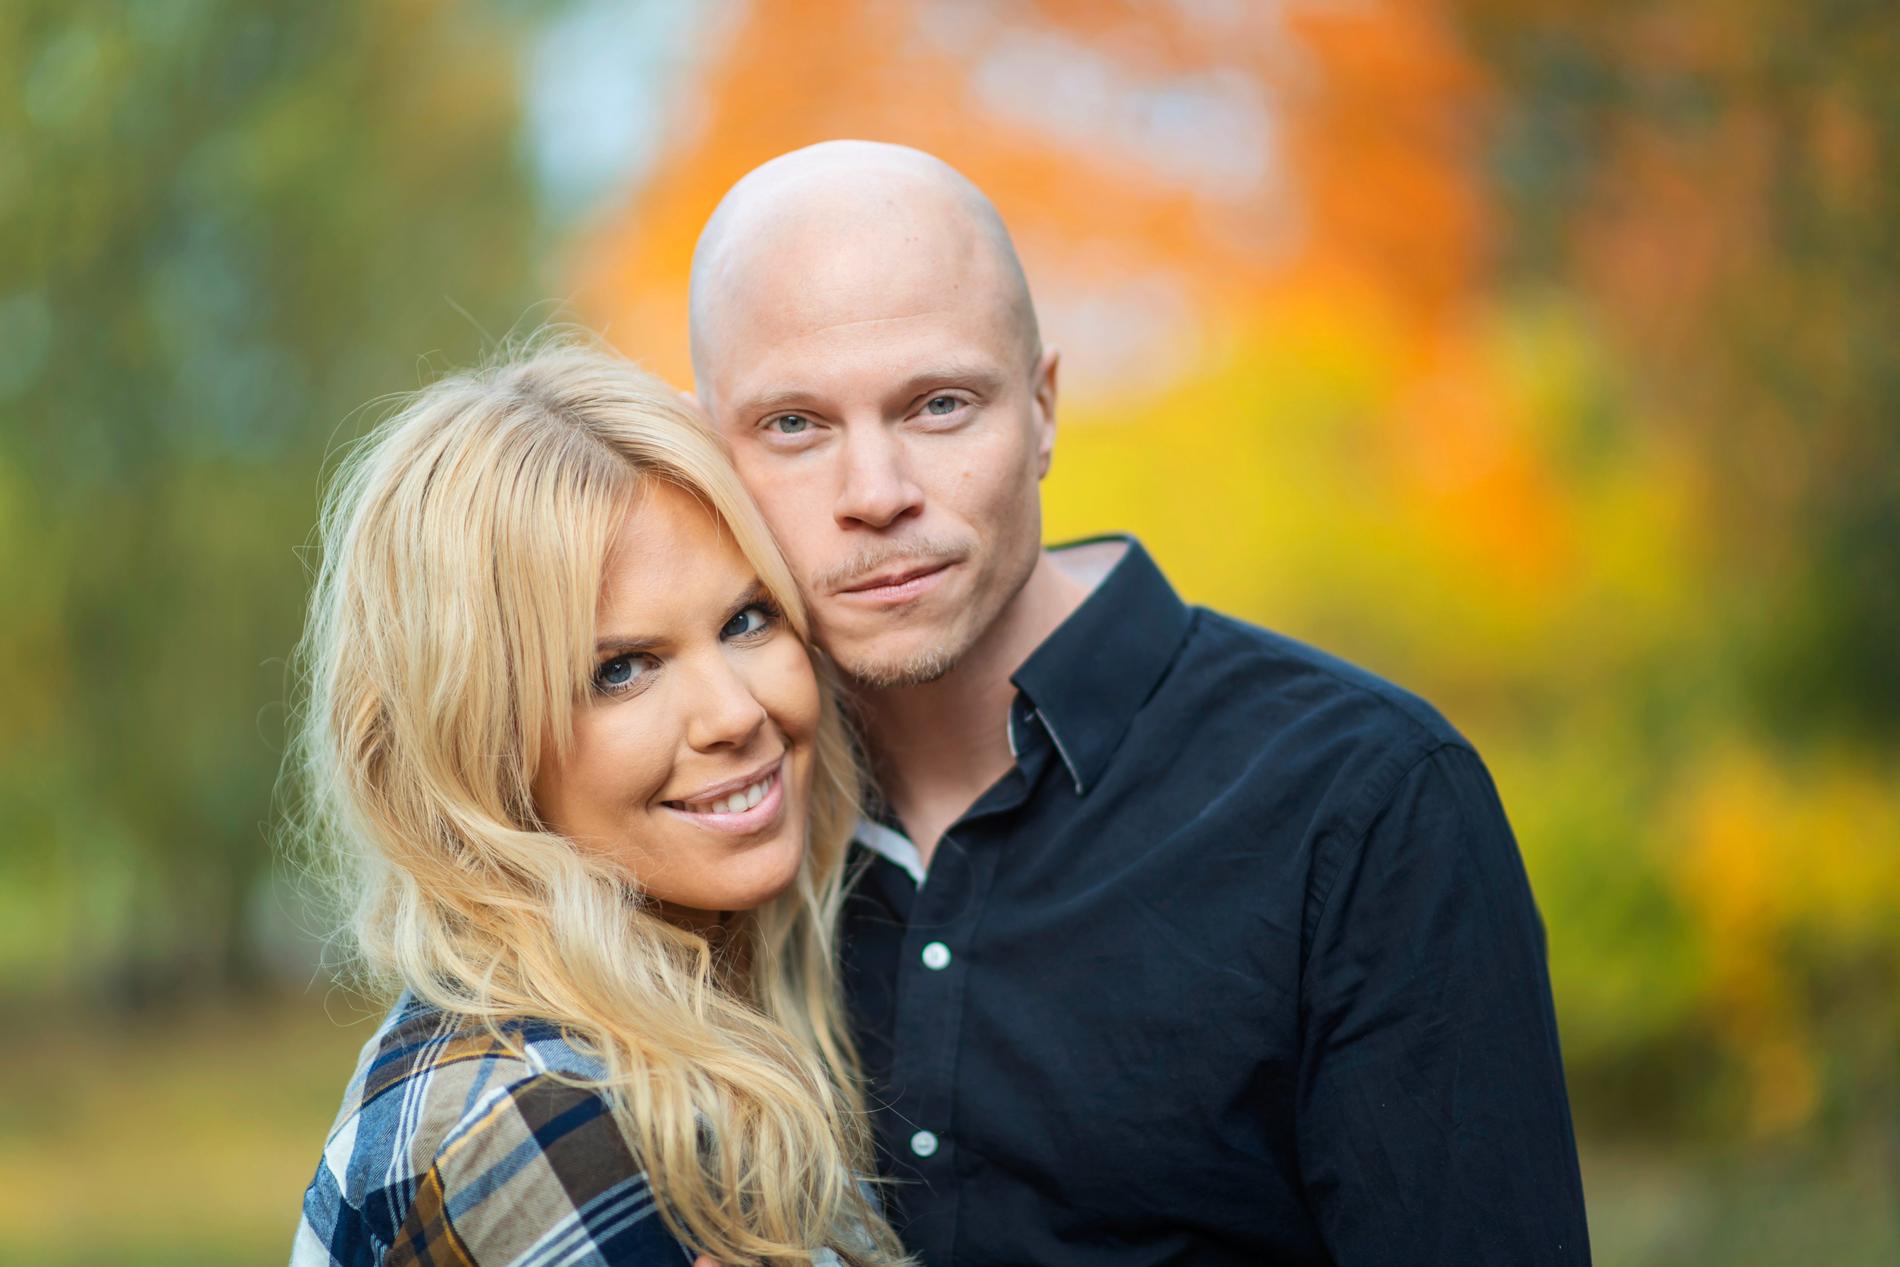 Emil Nygren och Maxine Nordlindh får sin egen tv-serie efter "Gift vid första ögonkastet". Pressbild.